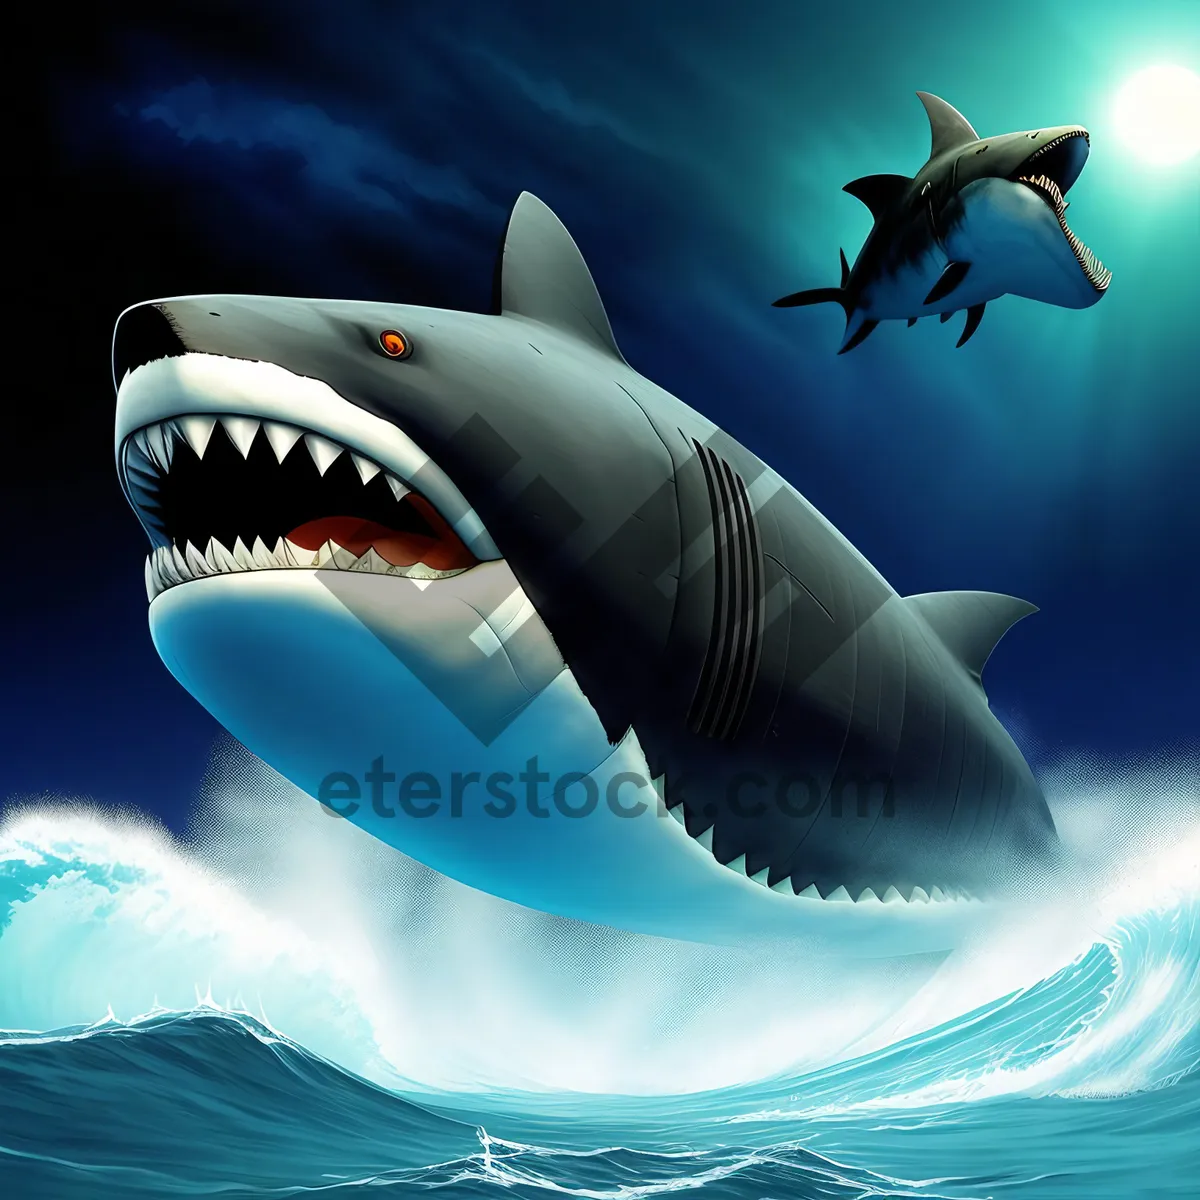 Picture of Shark's Flight: Majestic Ocean Predator in the Sky